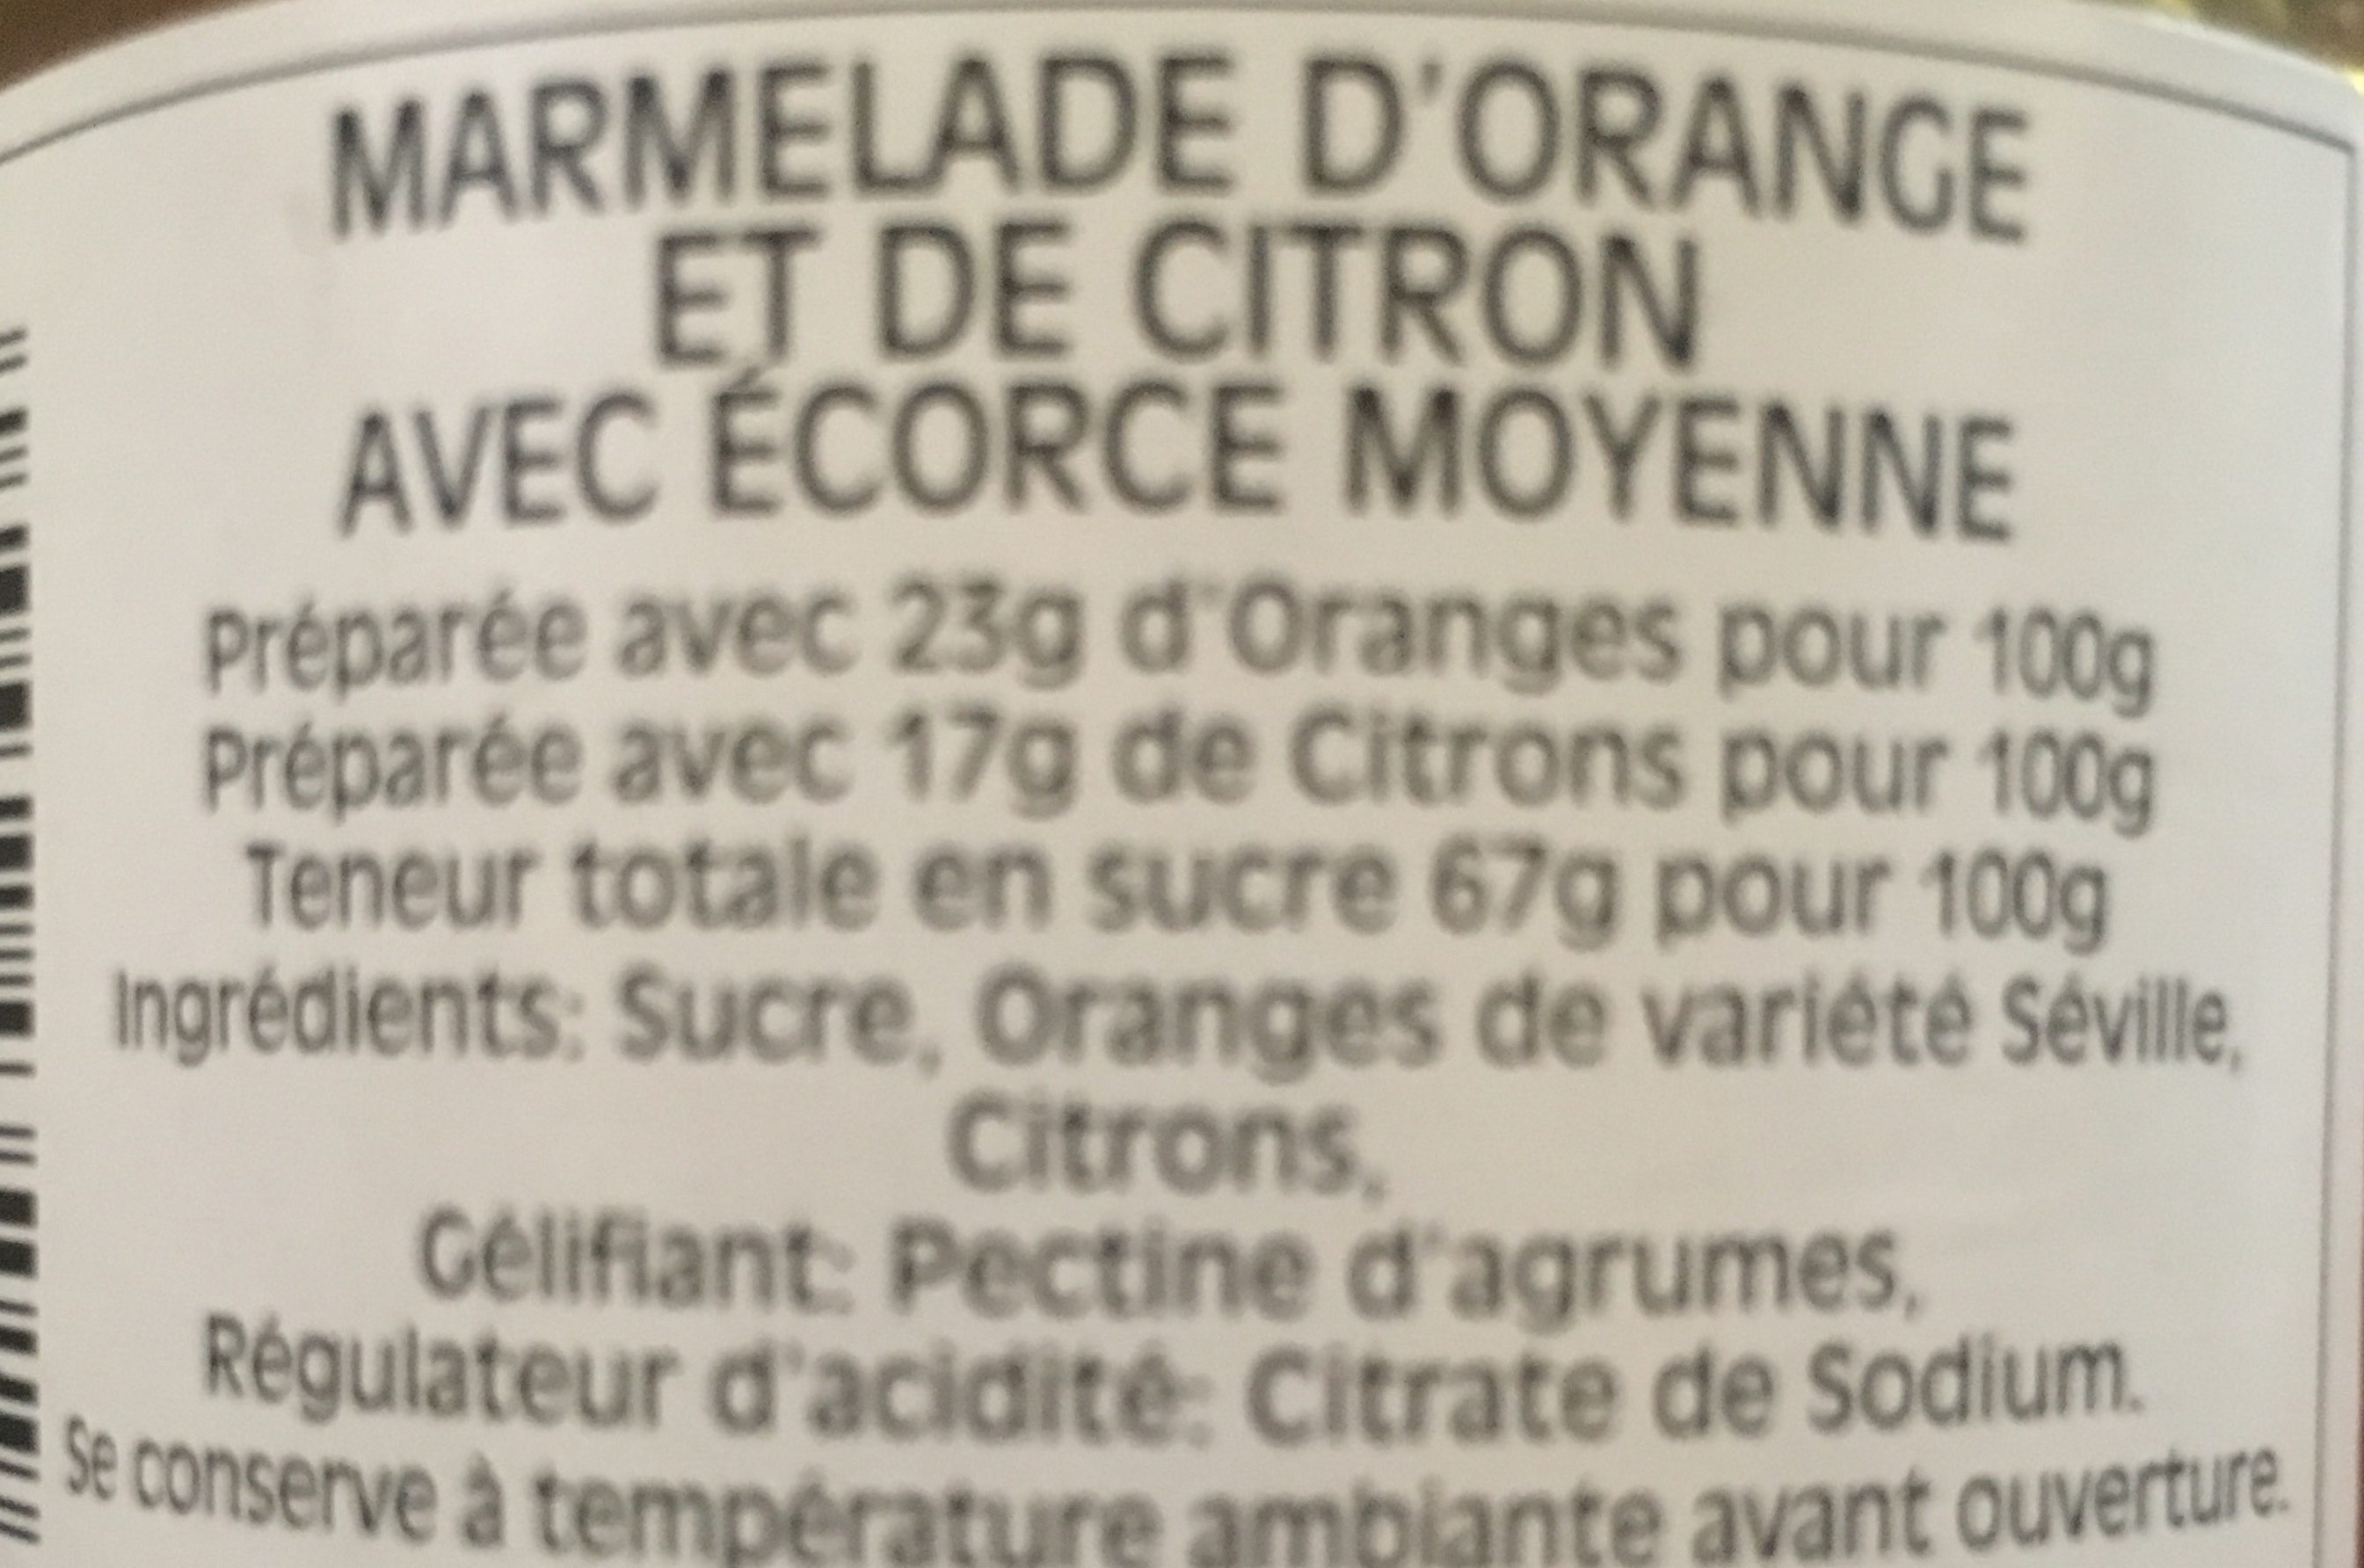 Marmelade D'orange Et De Citron Avec écorces Moyenne - Ingredients - fr